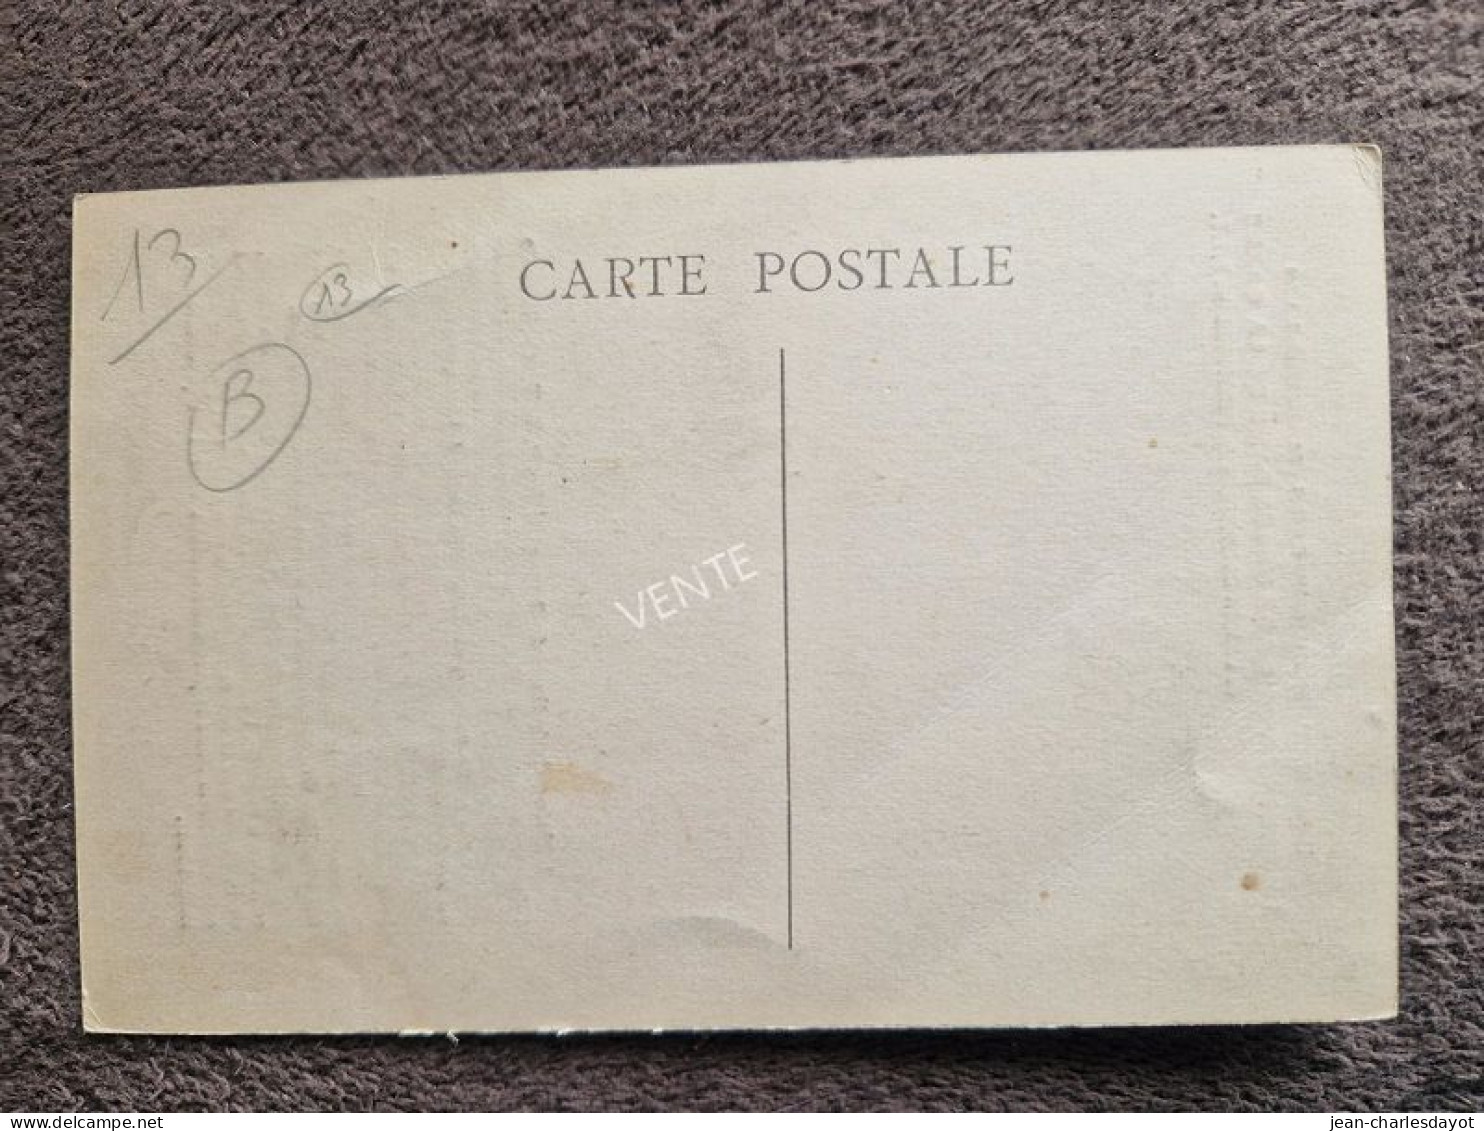 Carte Postale P.T.T. : Drapeau Union Catholique Des PTT - Histoire